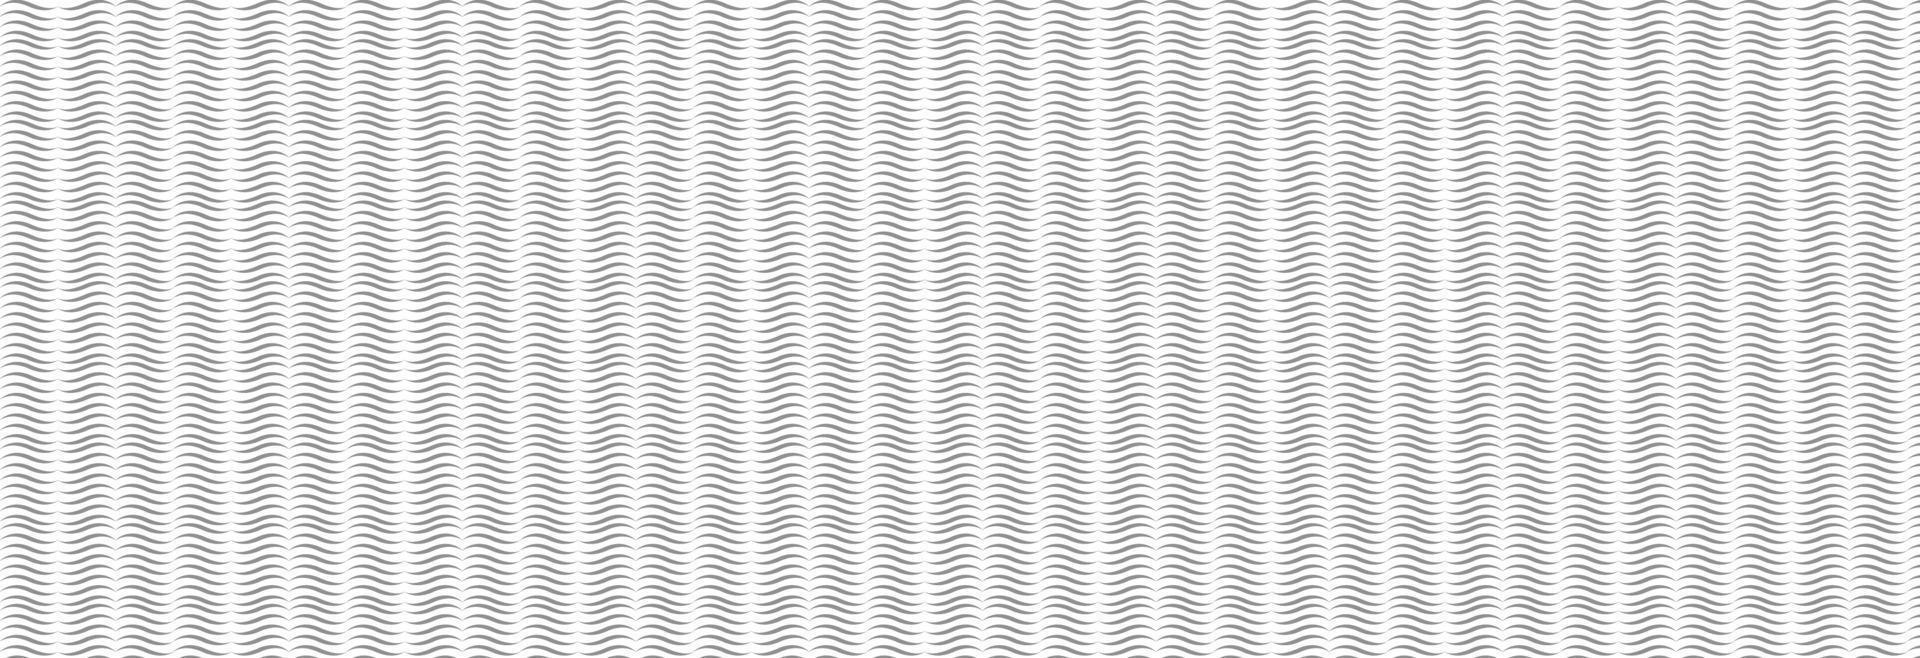 vector de patrón blanco y negro, las formas geométricas son de diferentes tamaños y opacidad. el patrón está uniformemente lleno de pequeños símbolos de yuanes negros. Ilustración vectorial sobre fondo blanco